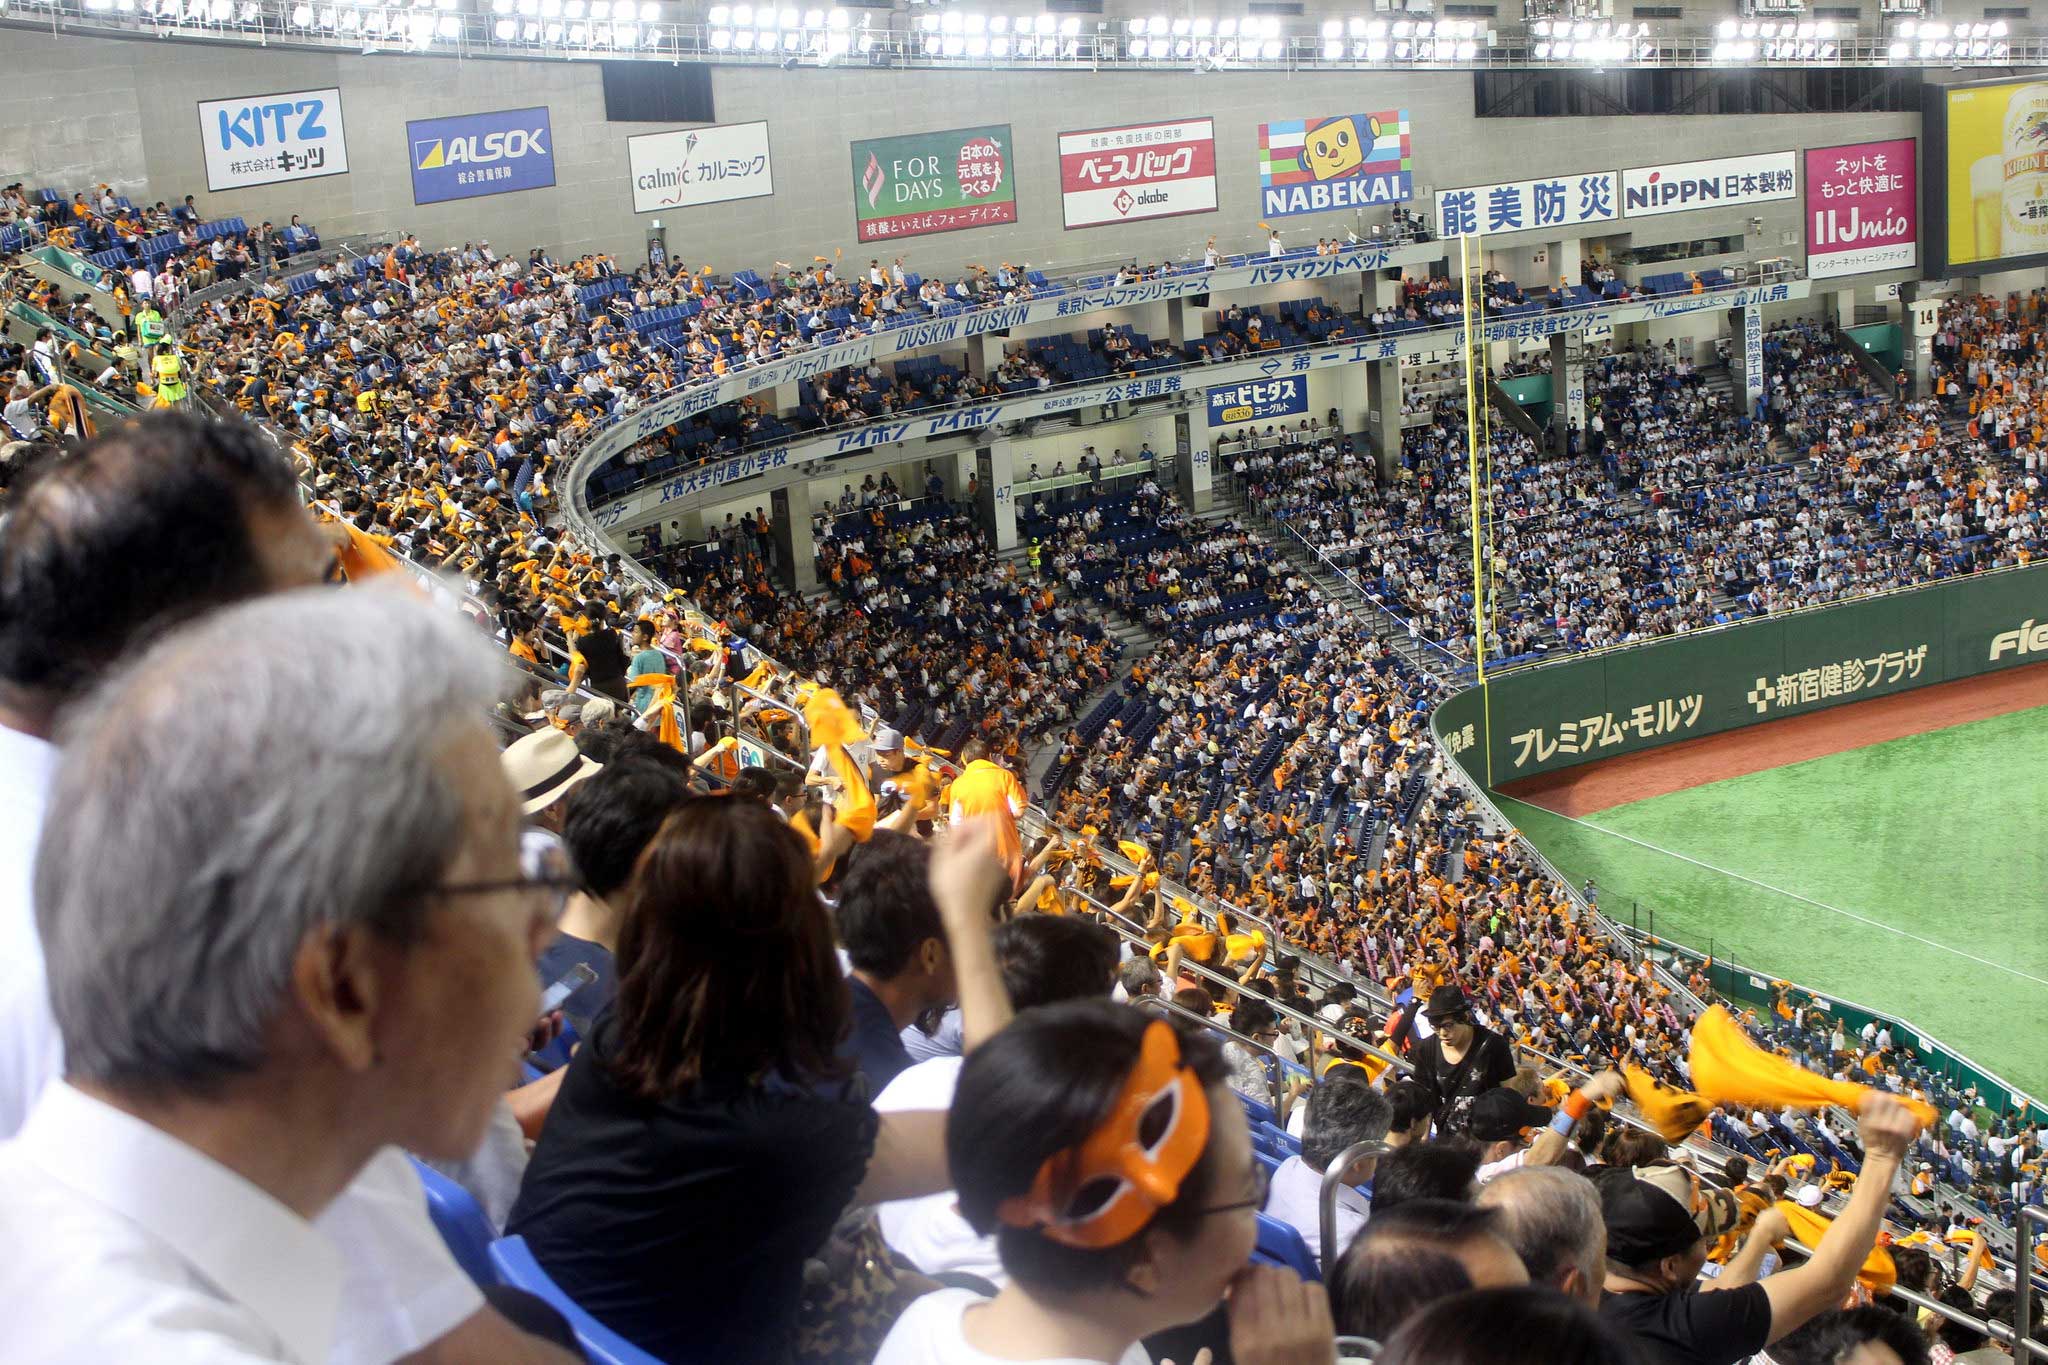 ค้นพบเกมเบสบอลยักษ์ใหญ่ที่โตเกียวโดมญี่ปุ่น